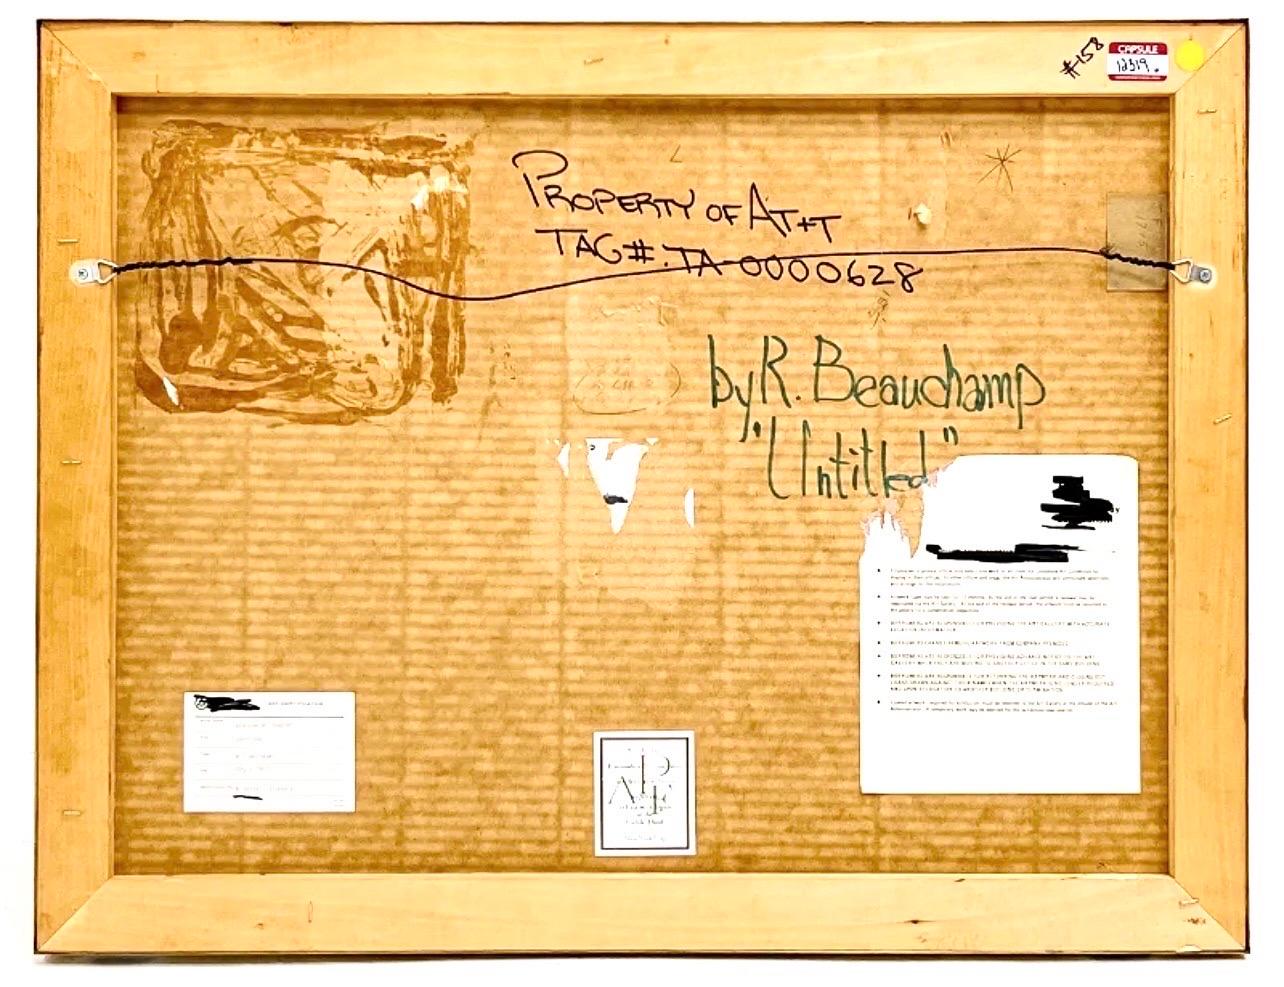 Robert Beauchamp, américain (1923-1995)
Sans titre
Signé à la main en bas à droite, titré au verso.
Peinture à l'huile sur papier d'art épais.
vue : 22 3/4 x 29 1/2 pouces
Dimensions du cadre : 23 1/4 x 30 1/4 x 1 1/4 pouces, cadre métallique avec